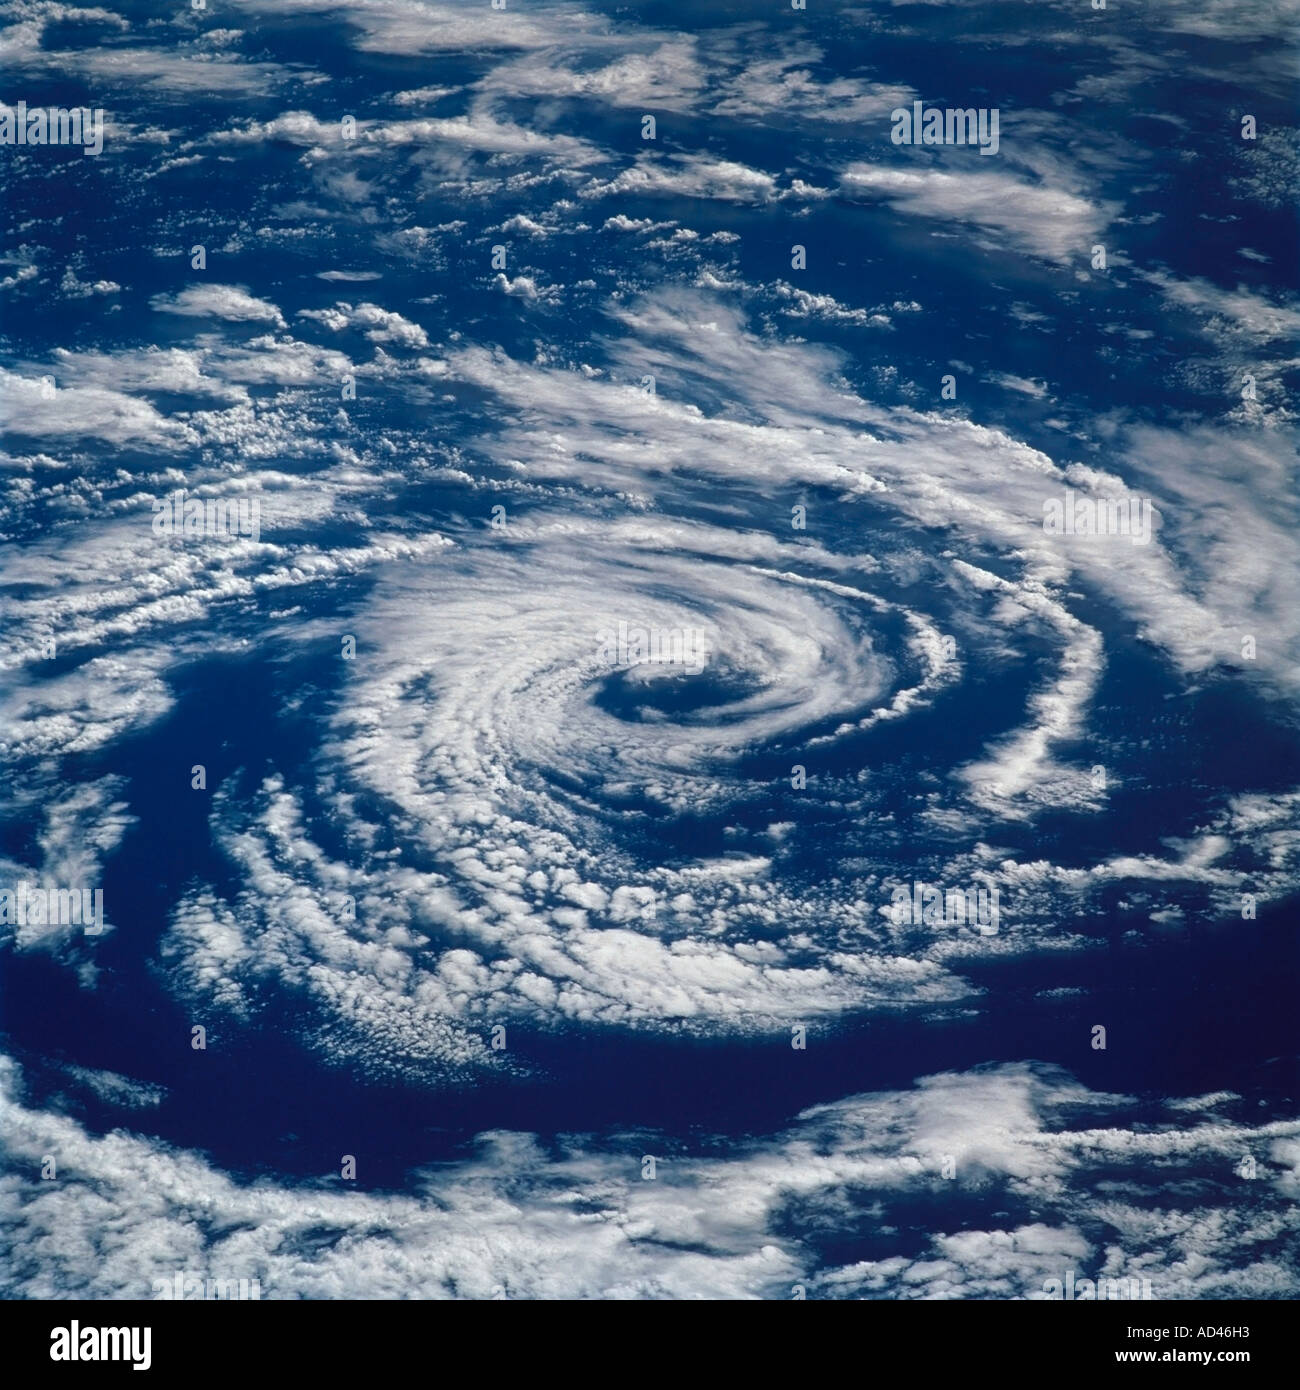 Nuvole circolare presi a bordo della navetta spaziale Endeavour. Foto Stock